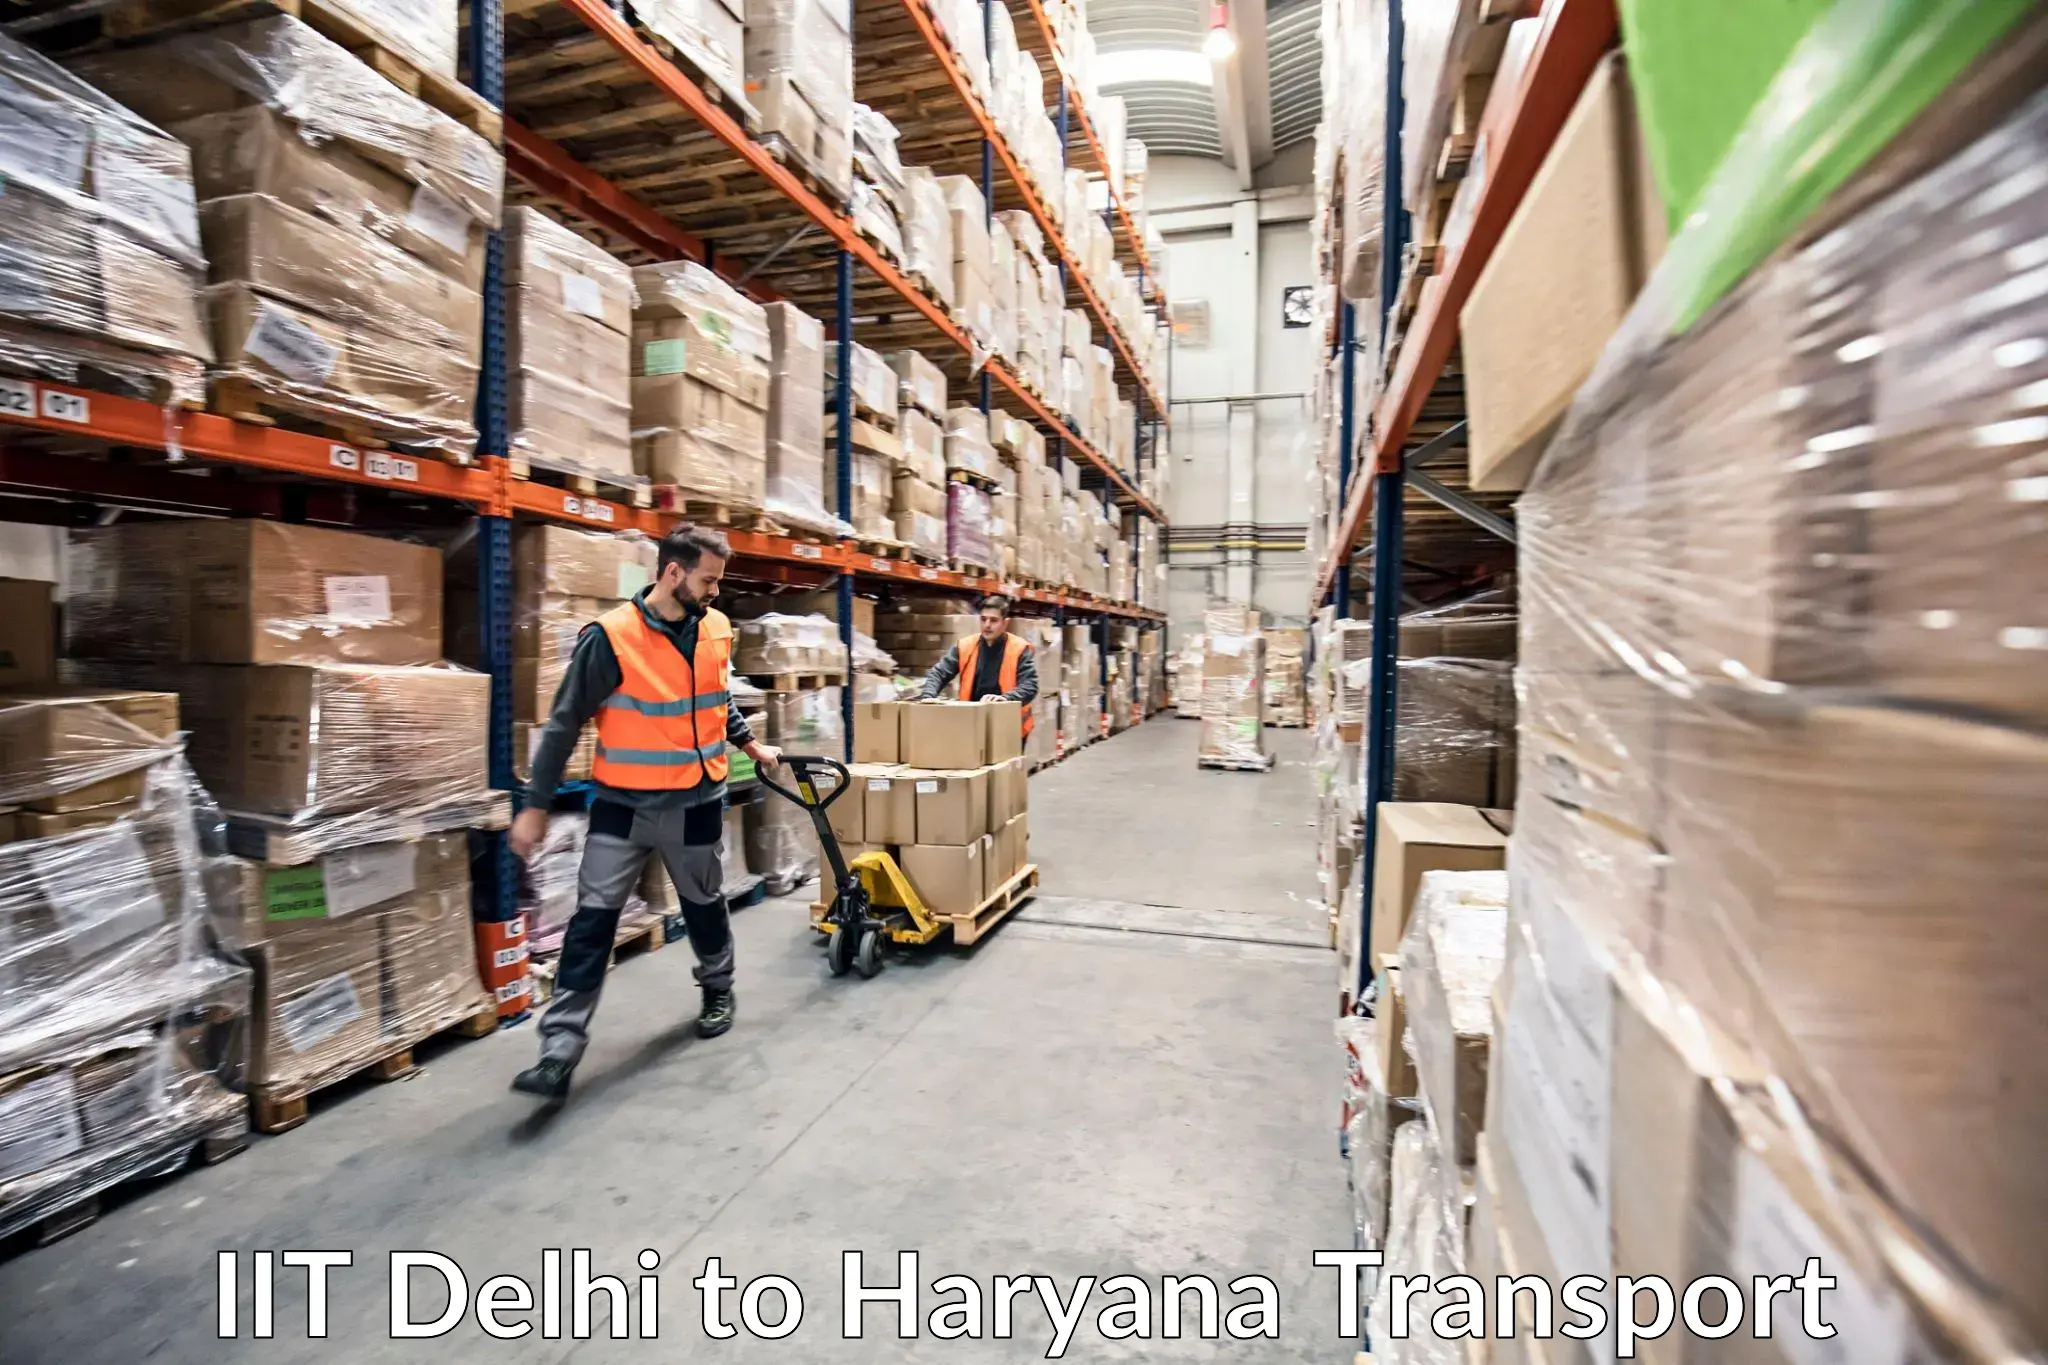 Shipping partner IIT Delhi to Chaudhary Charan Singh Haryana Agricultural University Hisar